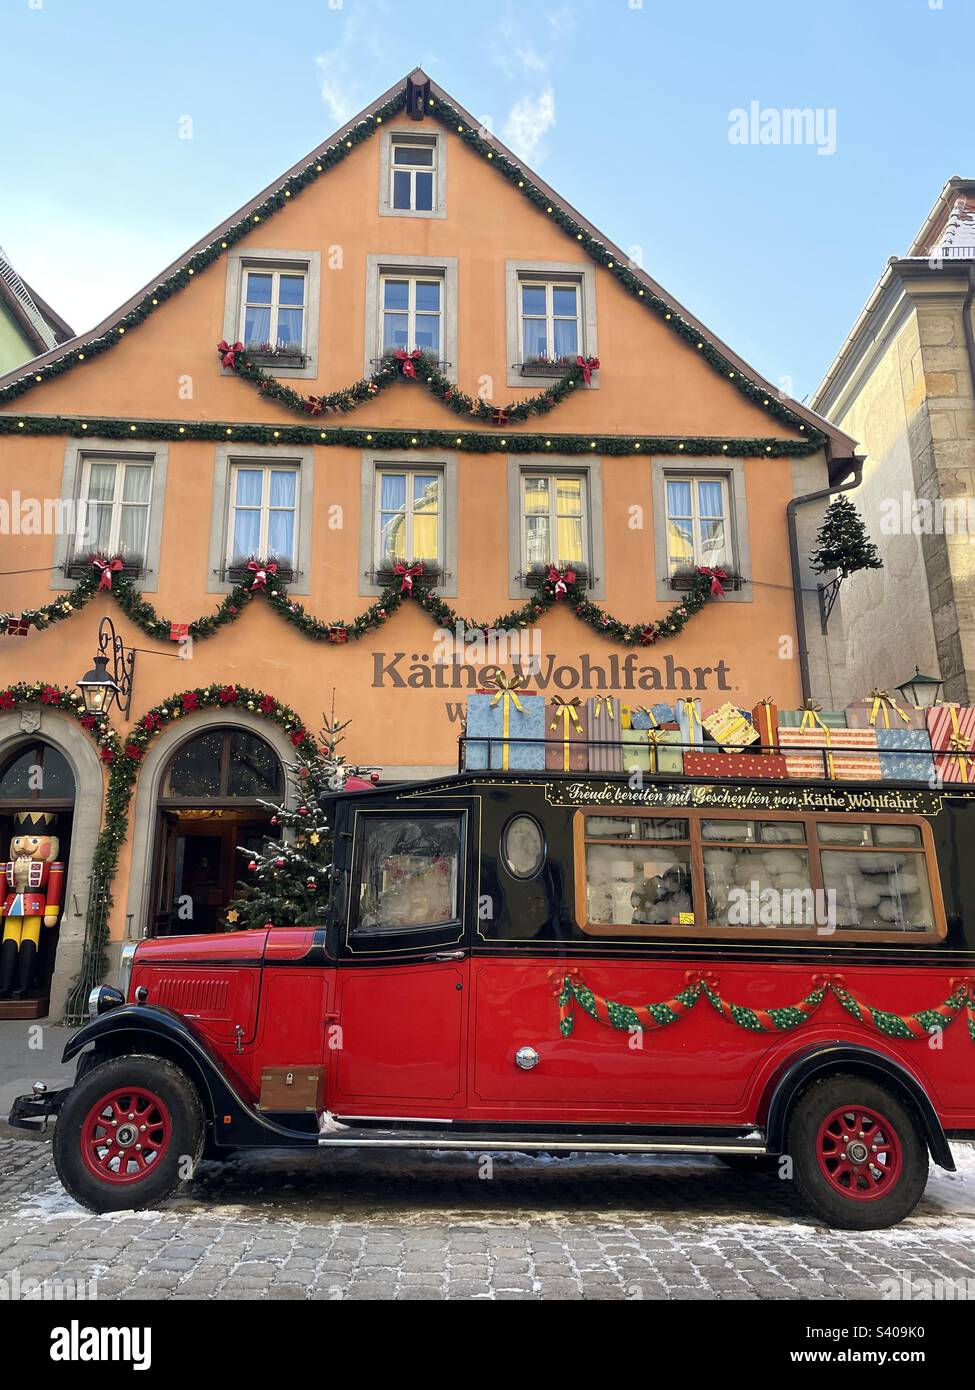 Vieux camion-cadeau de Noël devant le musée de Noël Käthe Wohlfahrt, Rothenburg ob der Tauber, Bavière, Allemagne. Banque D'Images